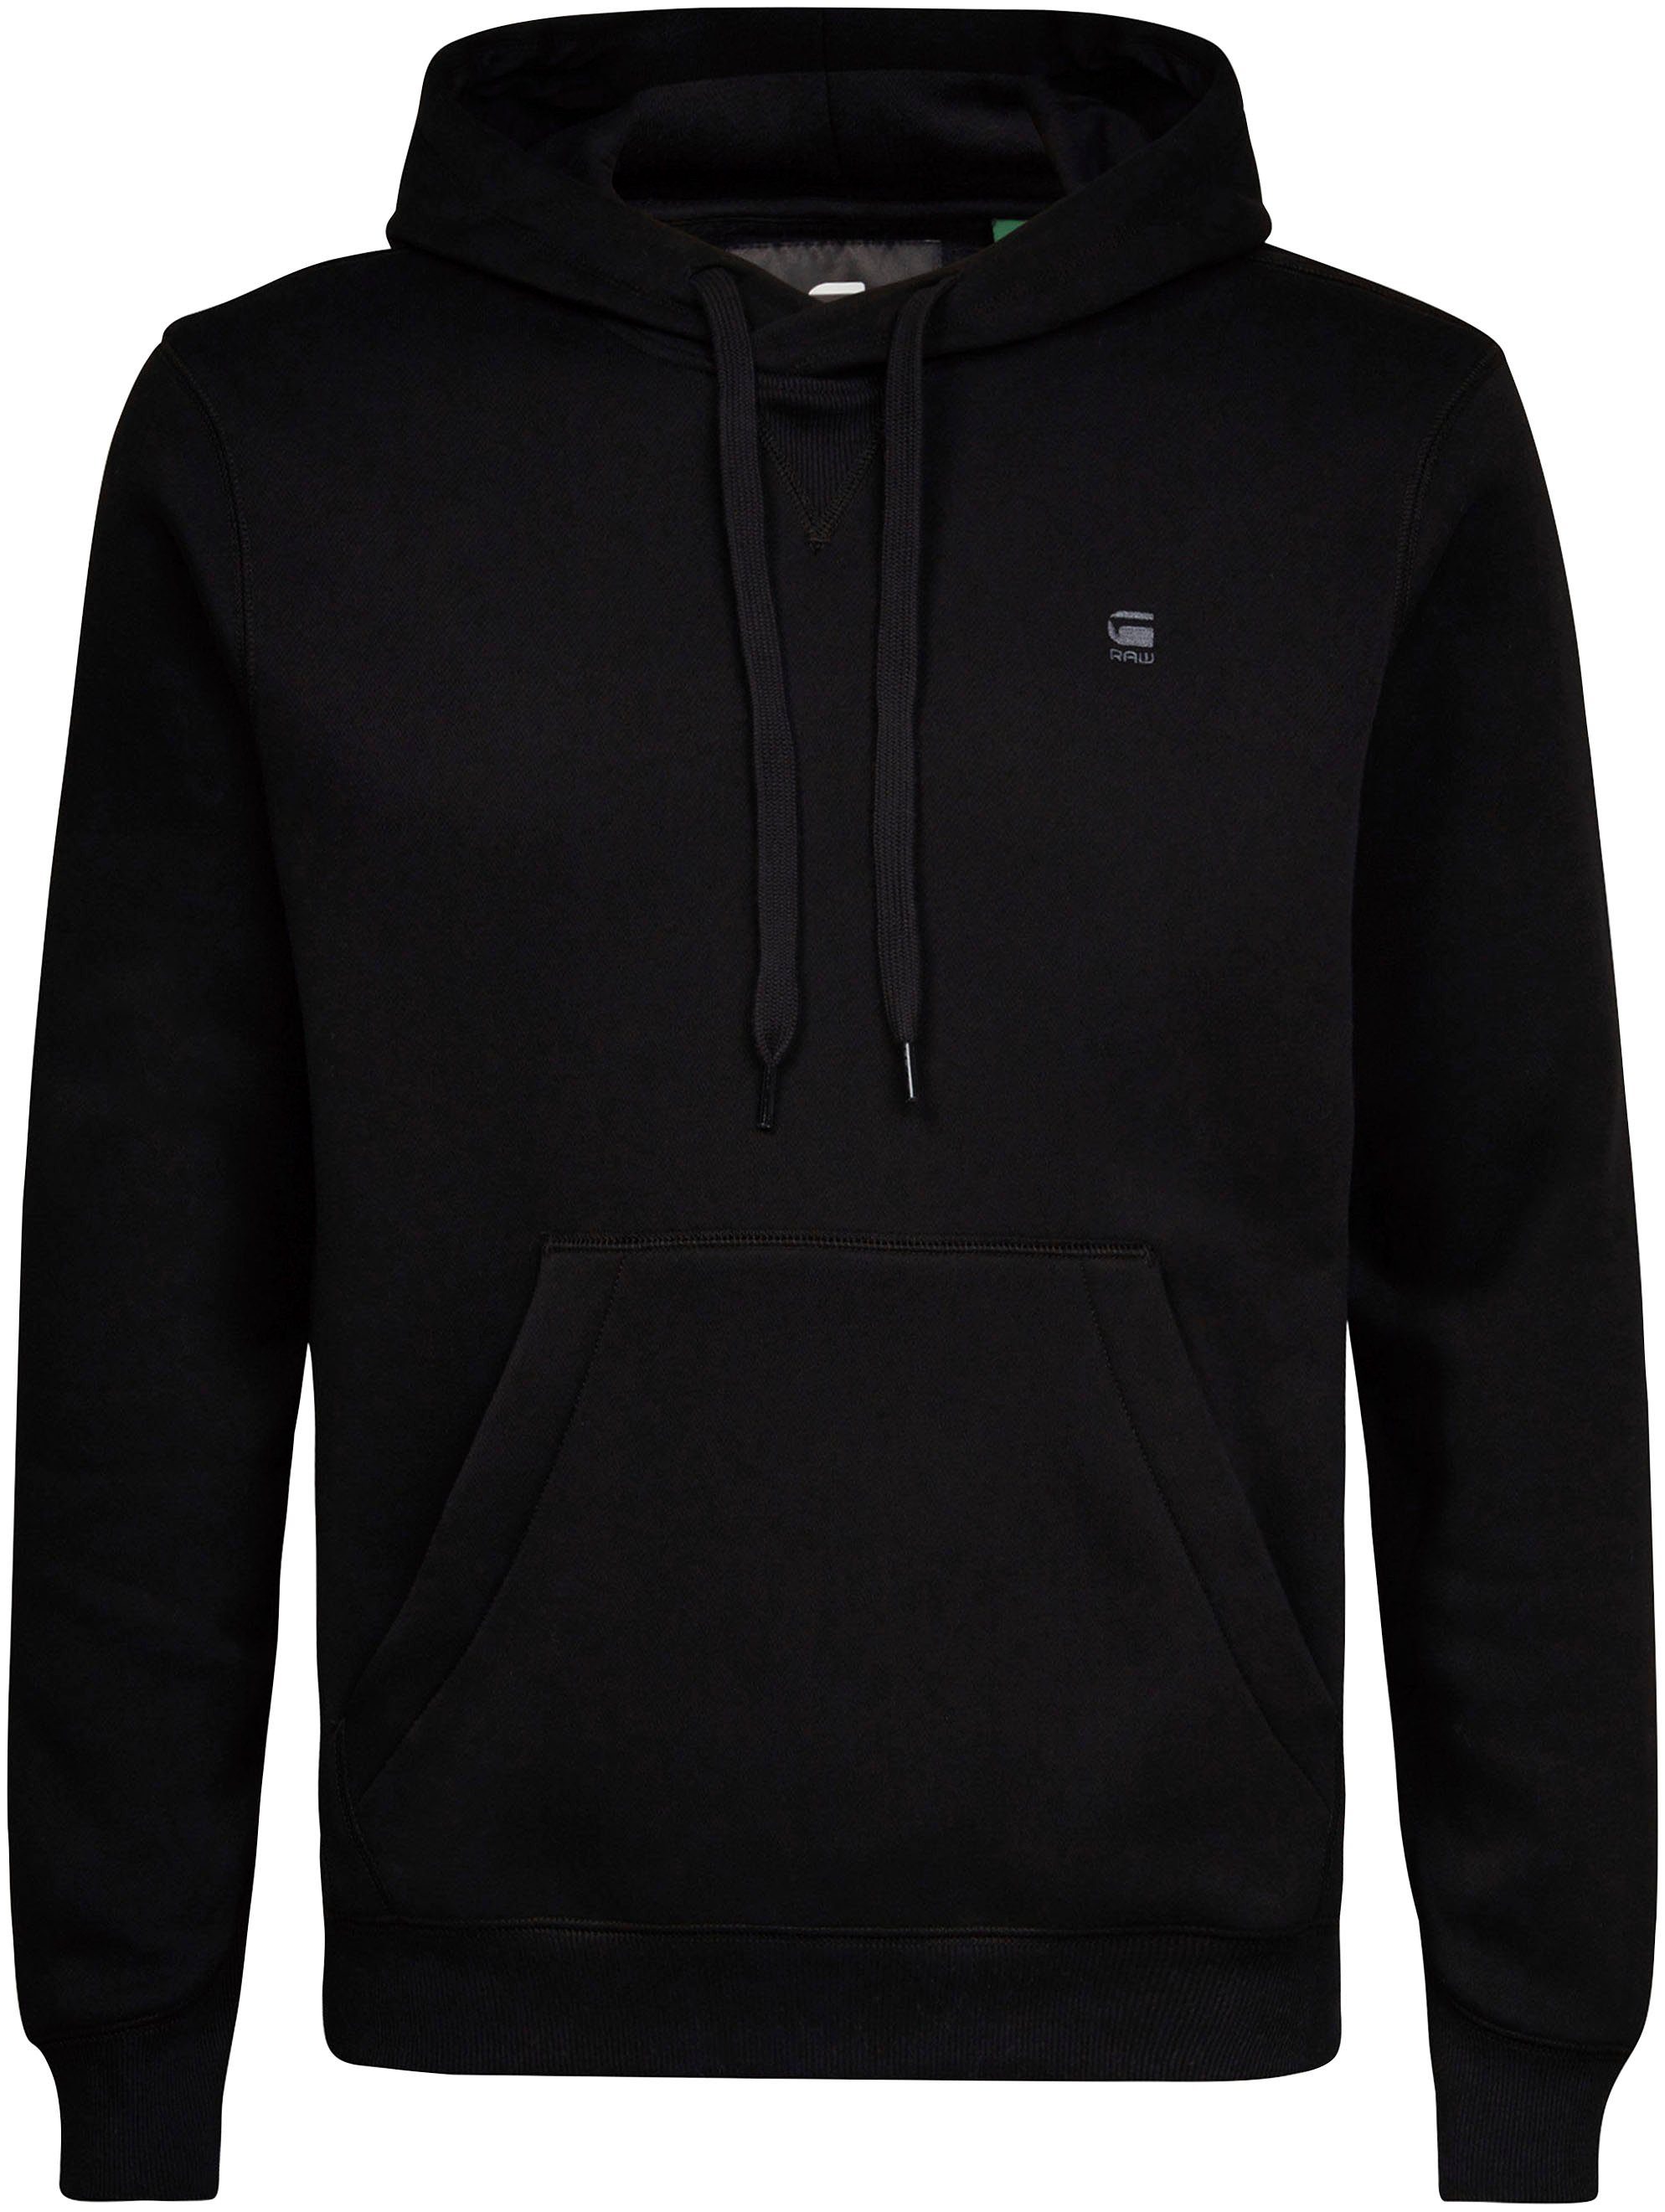 RAW Premium Kapuzensweatshirt schwarz Hoody G-Star